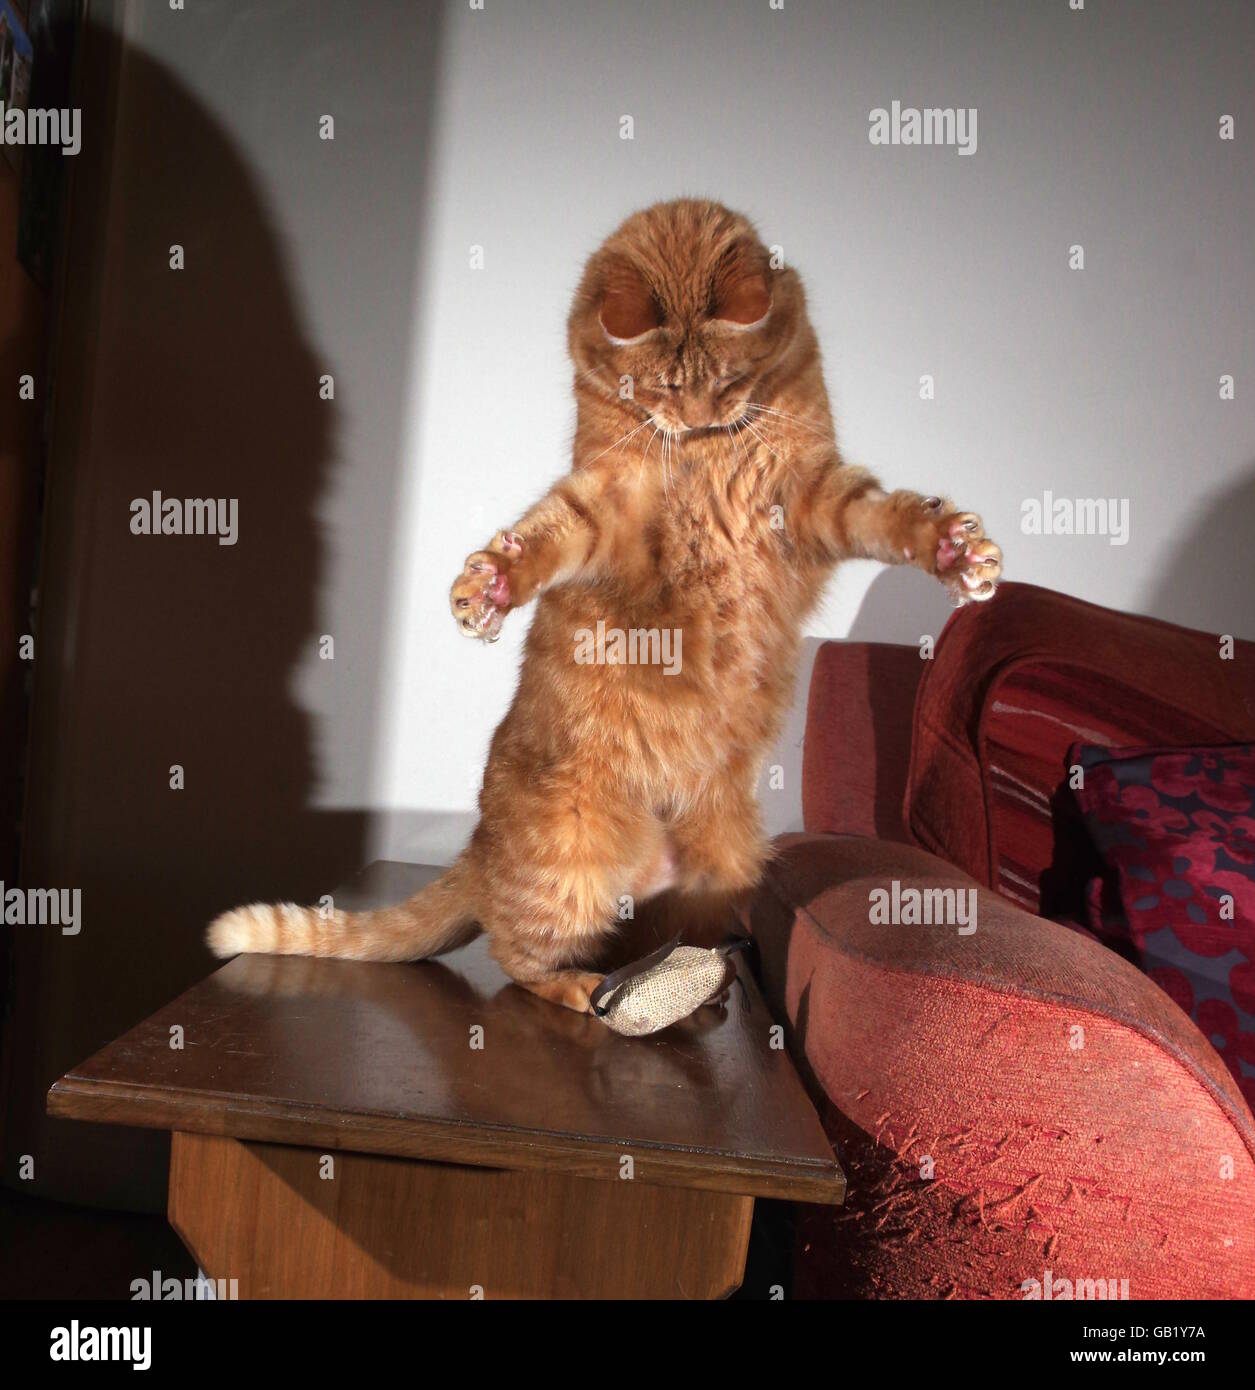 Le gingembre chat jouant avec la souris jouet Banque D'Images